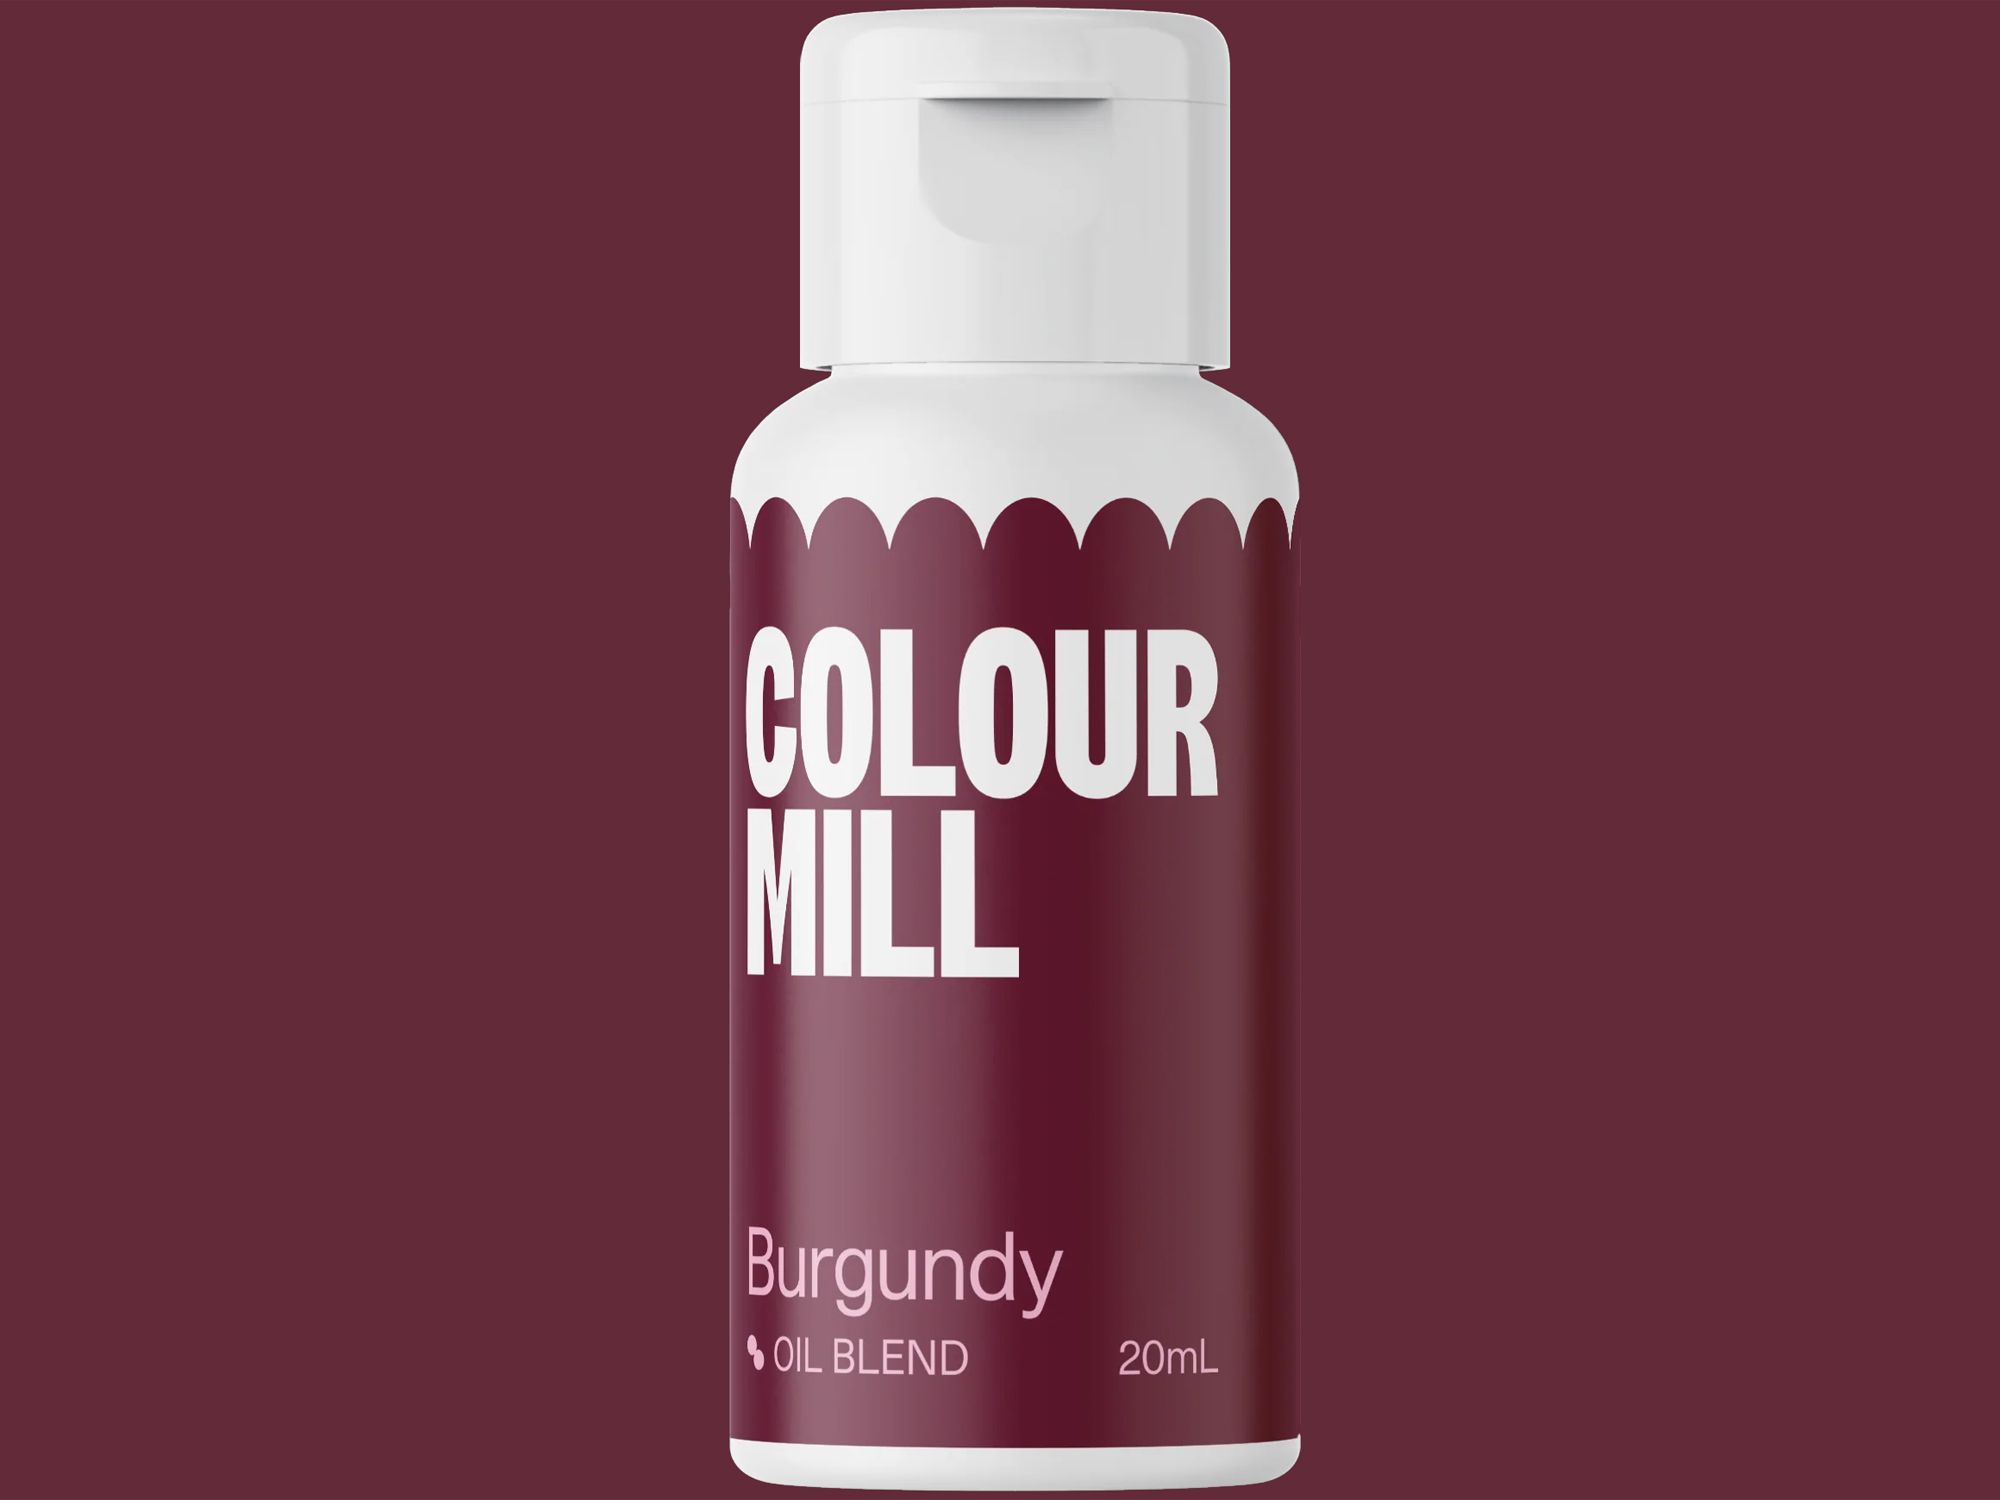 Colour Mill Burgundy (Oil Blend) 20ml